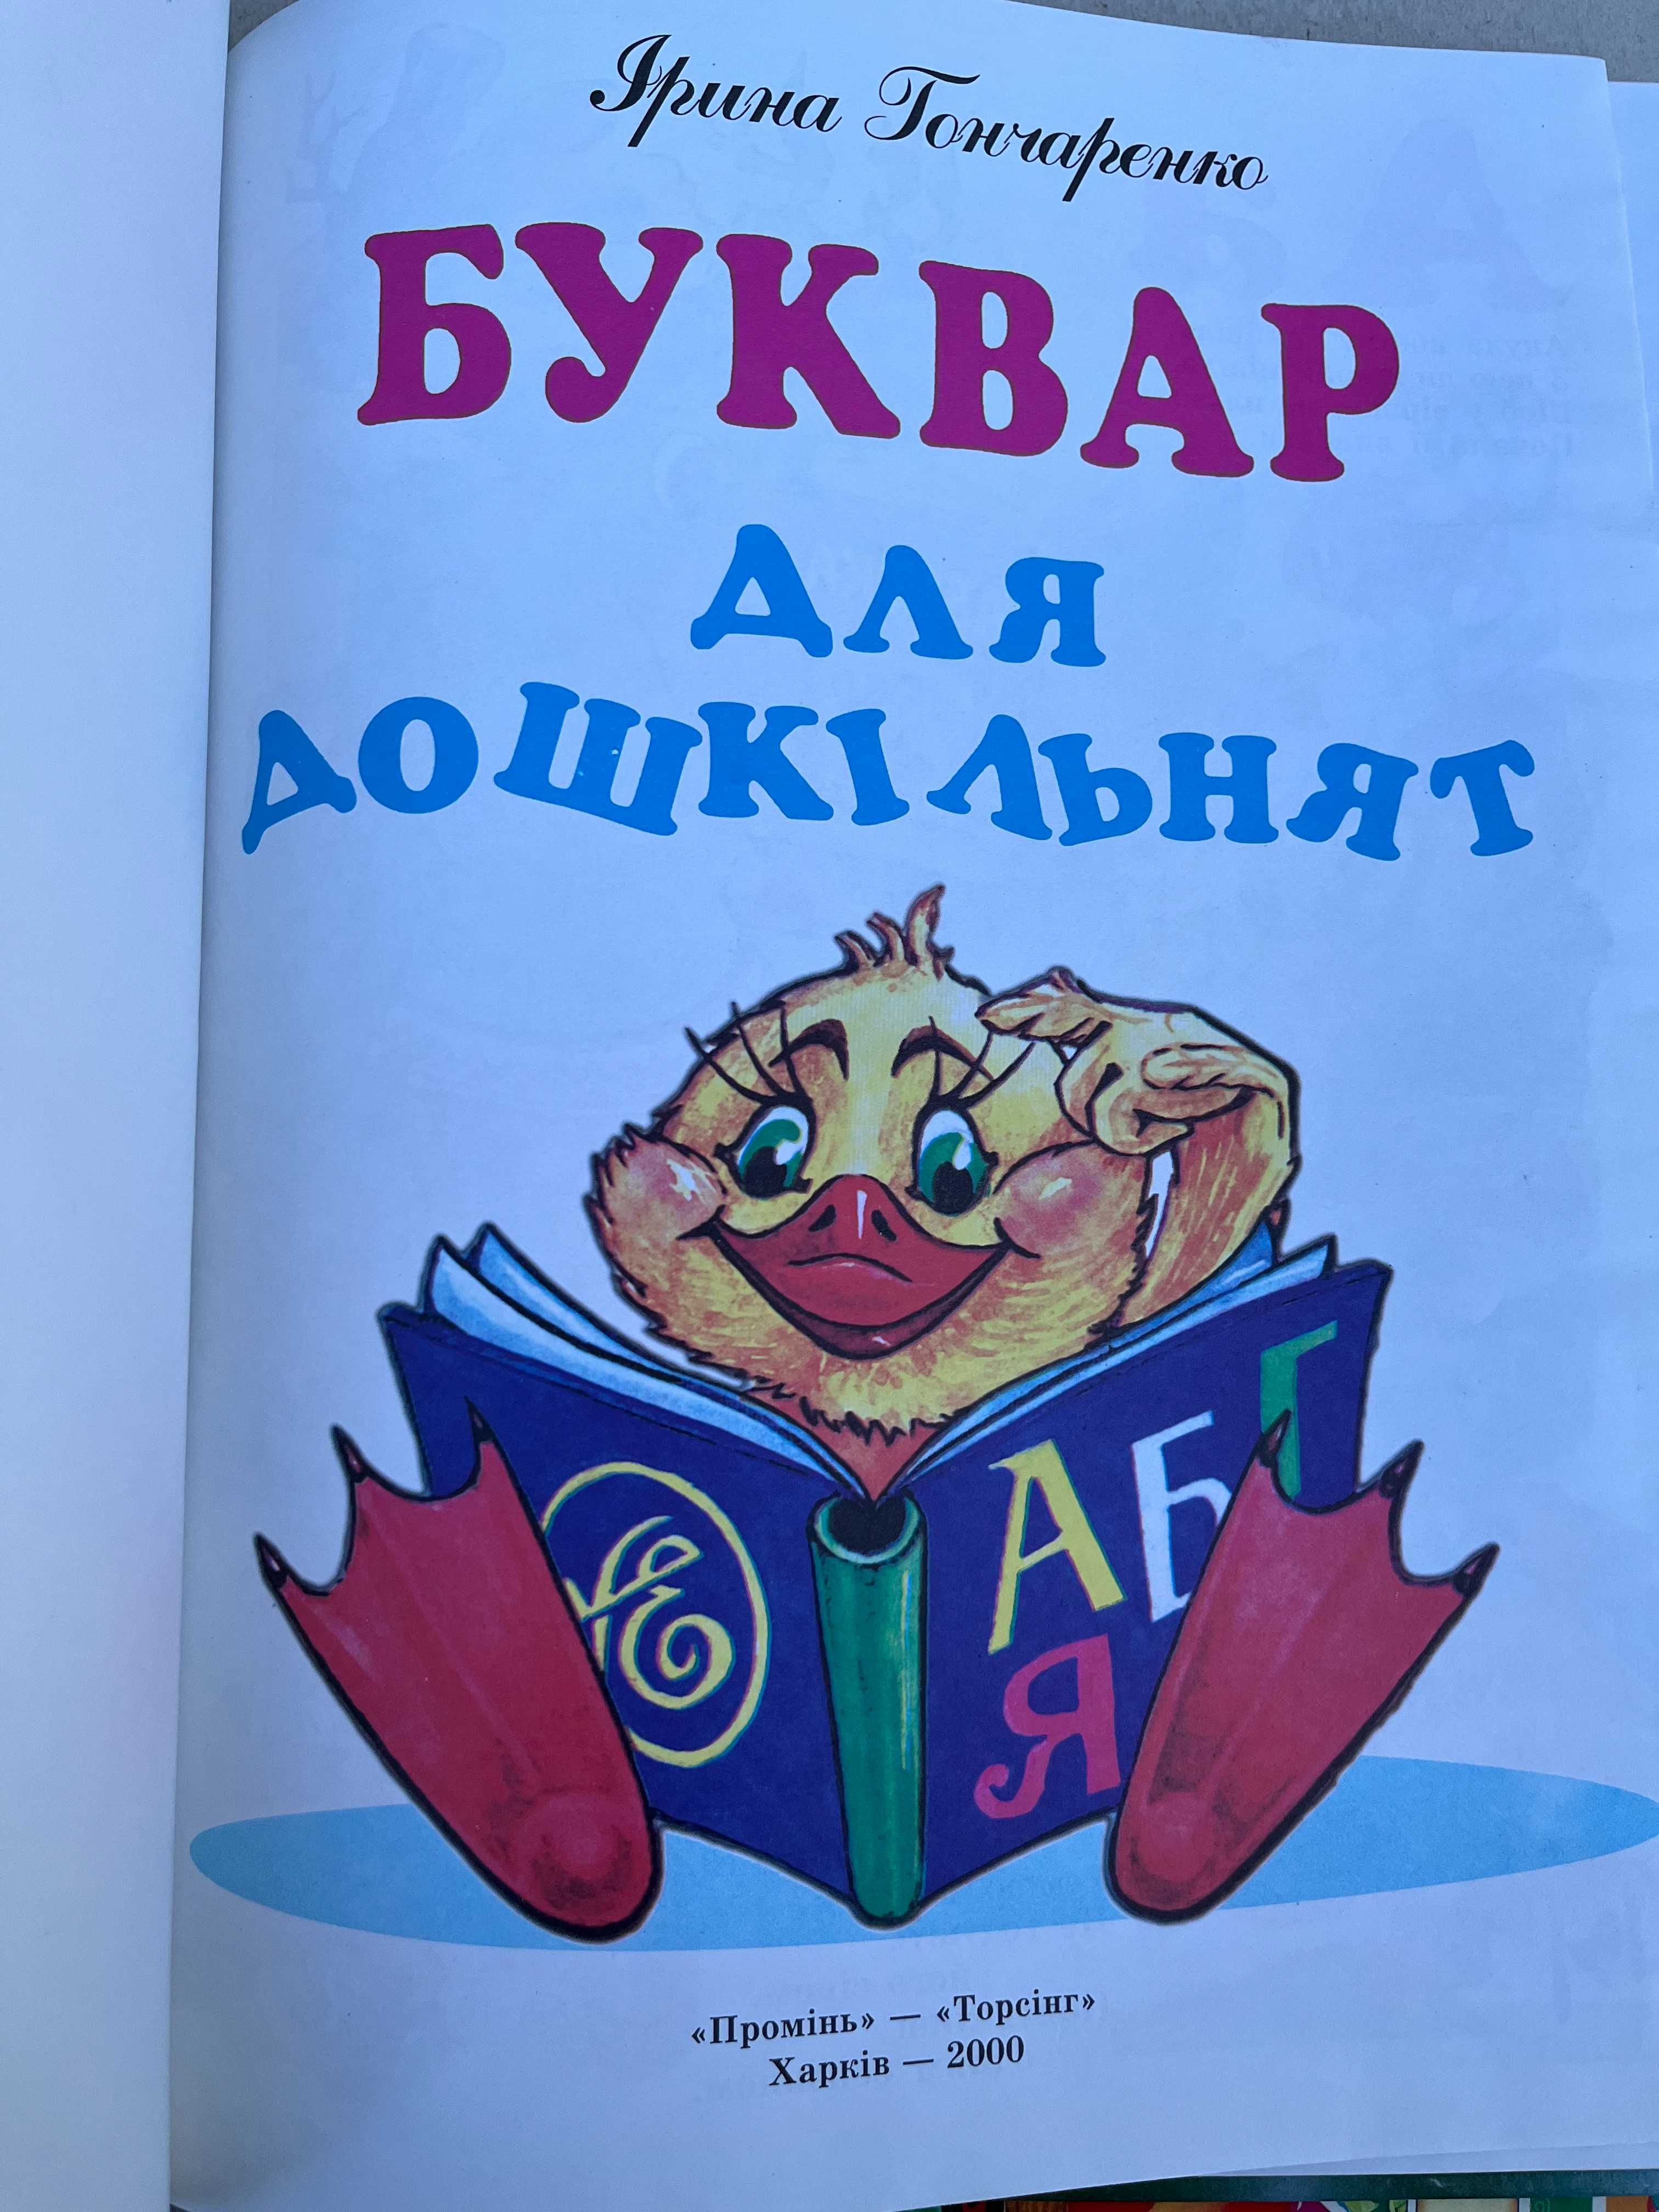 " Детские познавательно-развлекательные книги "